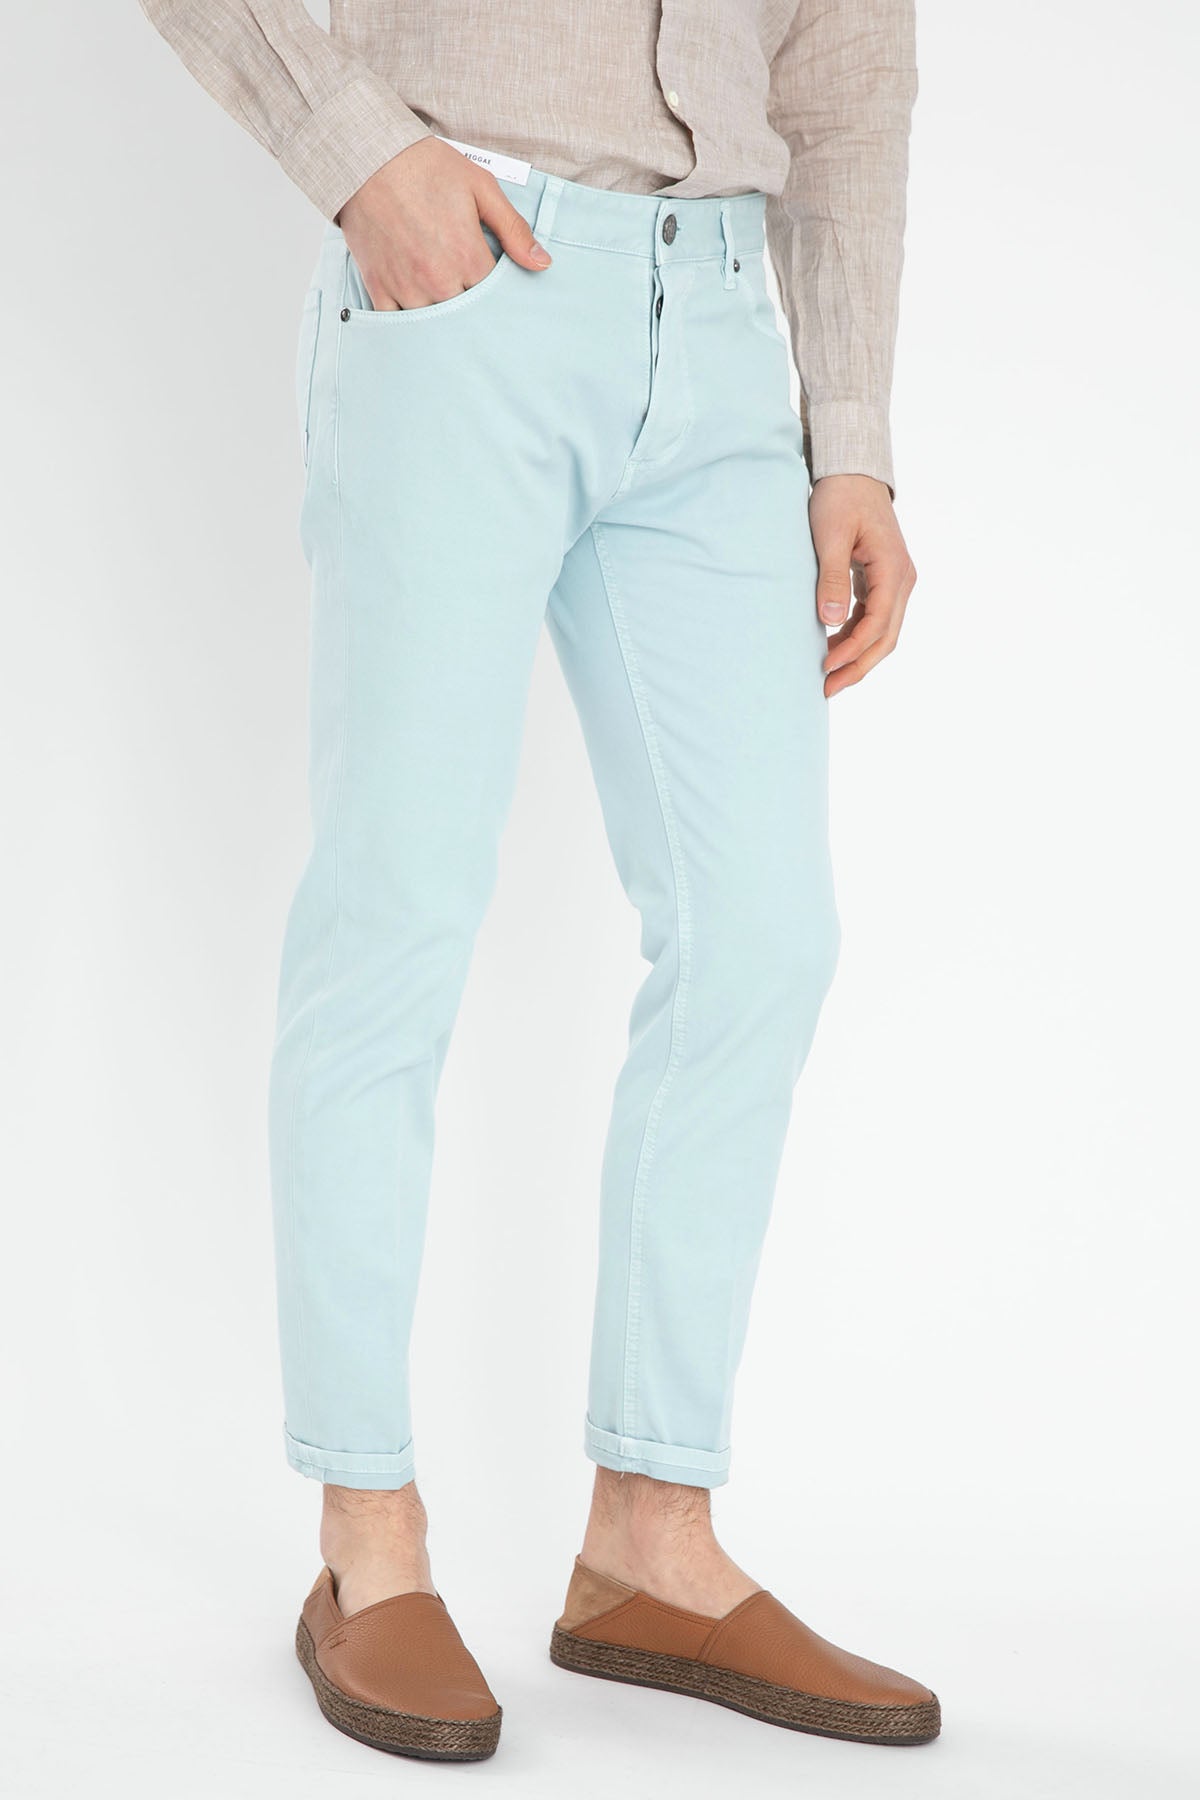 Pantaloni Torino Reggae Fit Jeans-Libas Trendy Fashion Store